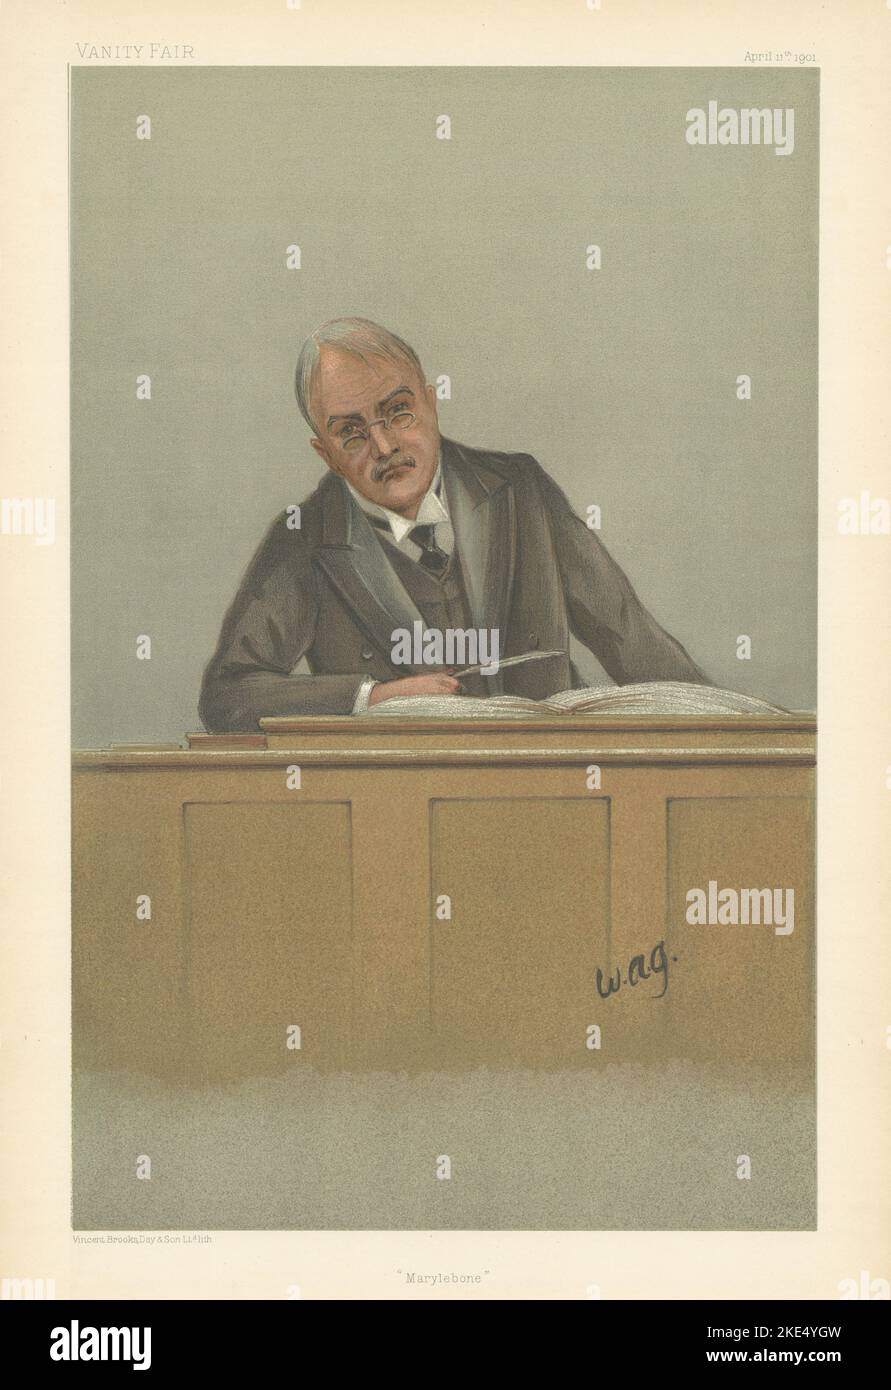 EITELY FAIR SPION CARTOON Alfred Chichele Plowden 'Marylebone' Police. Gesetz 1901 Stockfoto